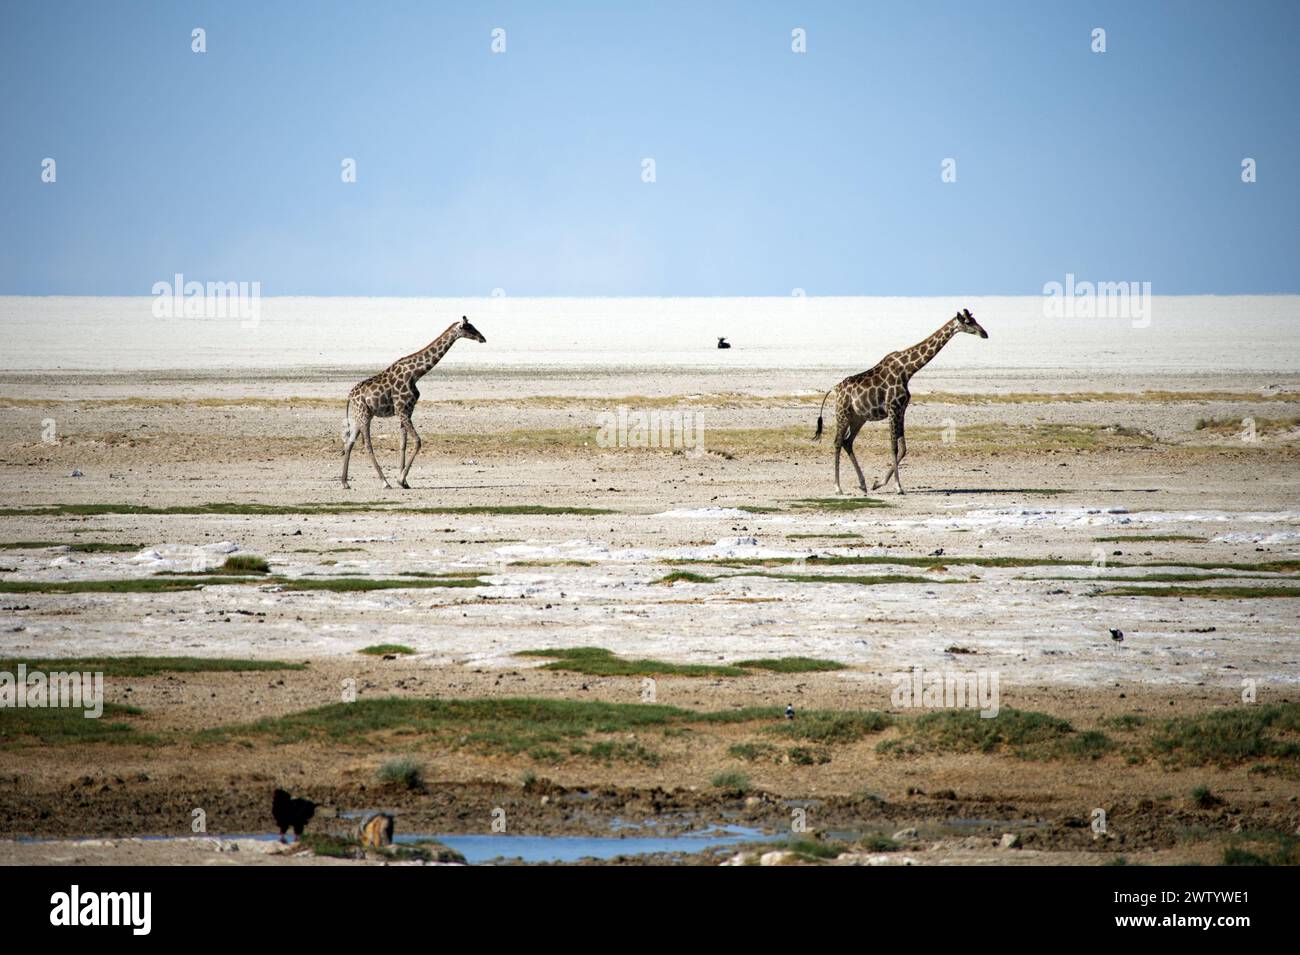 Girafes courant à travers le désert sec, comme on le voit lors d'un safari dans le parc national d'Etosha, Namibie, Afrique australe Banque D'Images